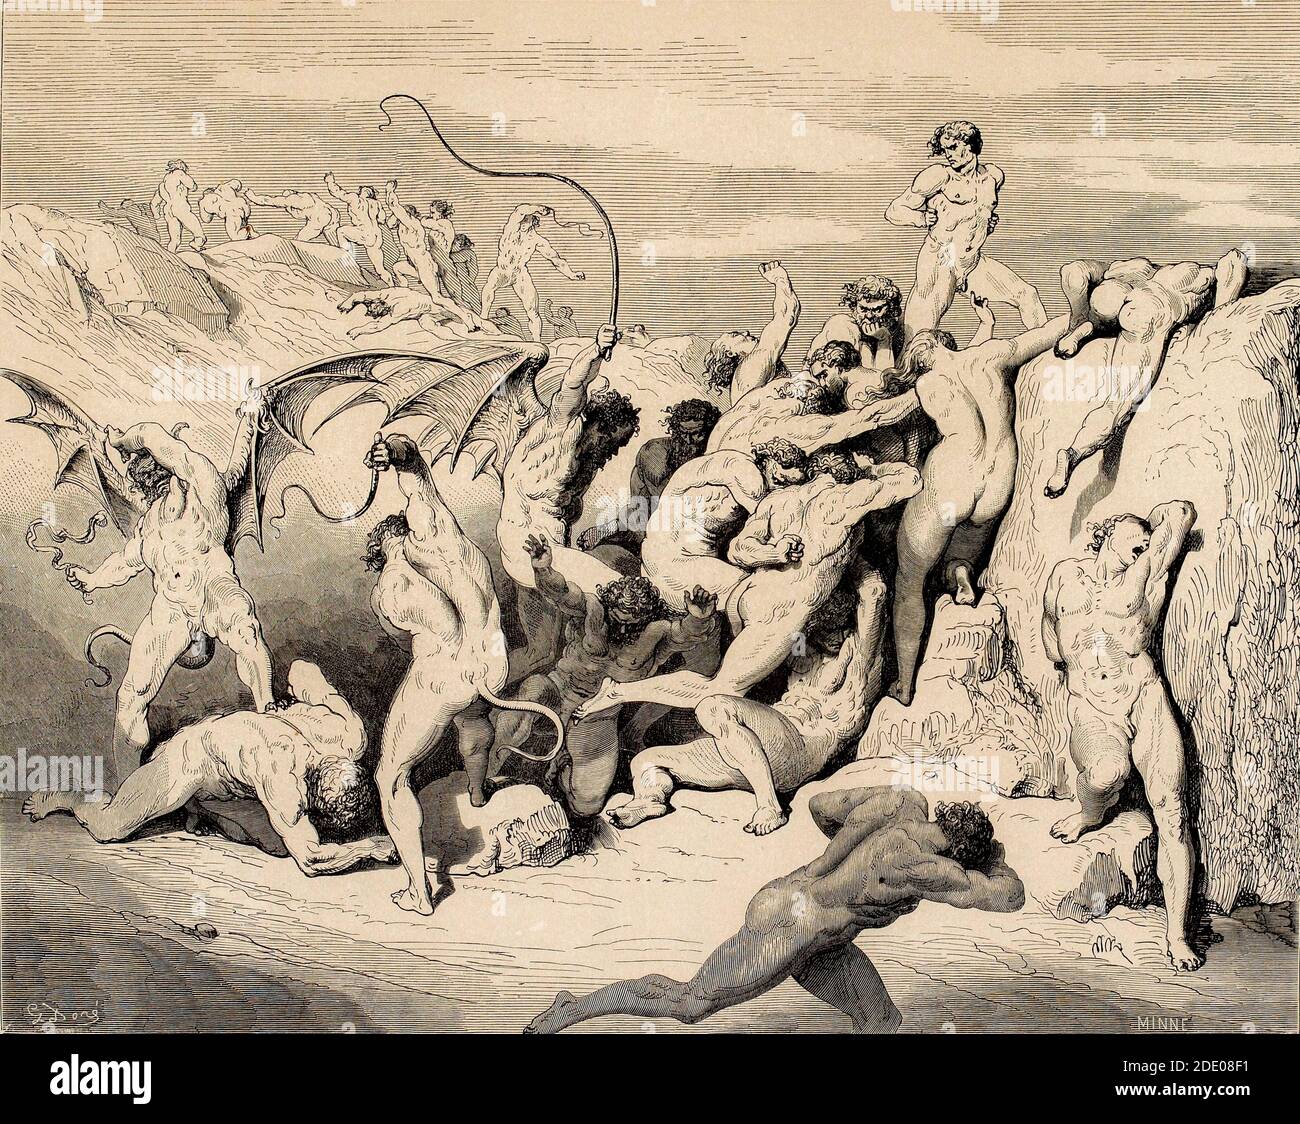 Dante Divina Commedia - Inferno - XVIII canto - il Ruffiani e seduttori - VIII cerchio - illustrazione di Gustave Dorè Foto Stock